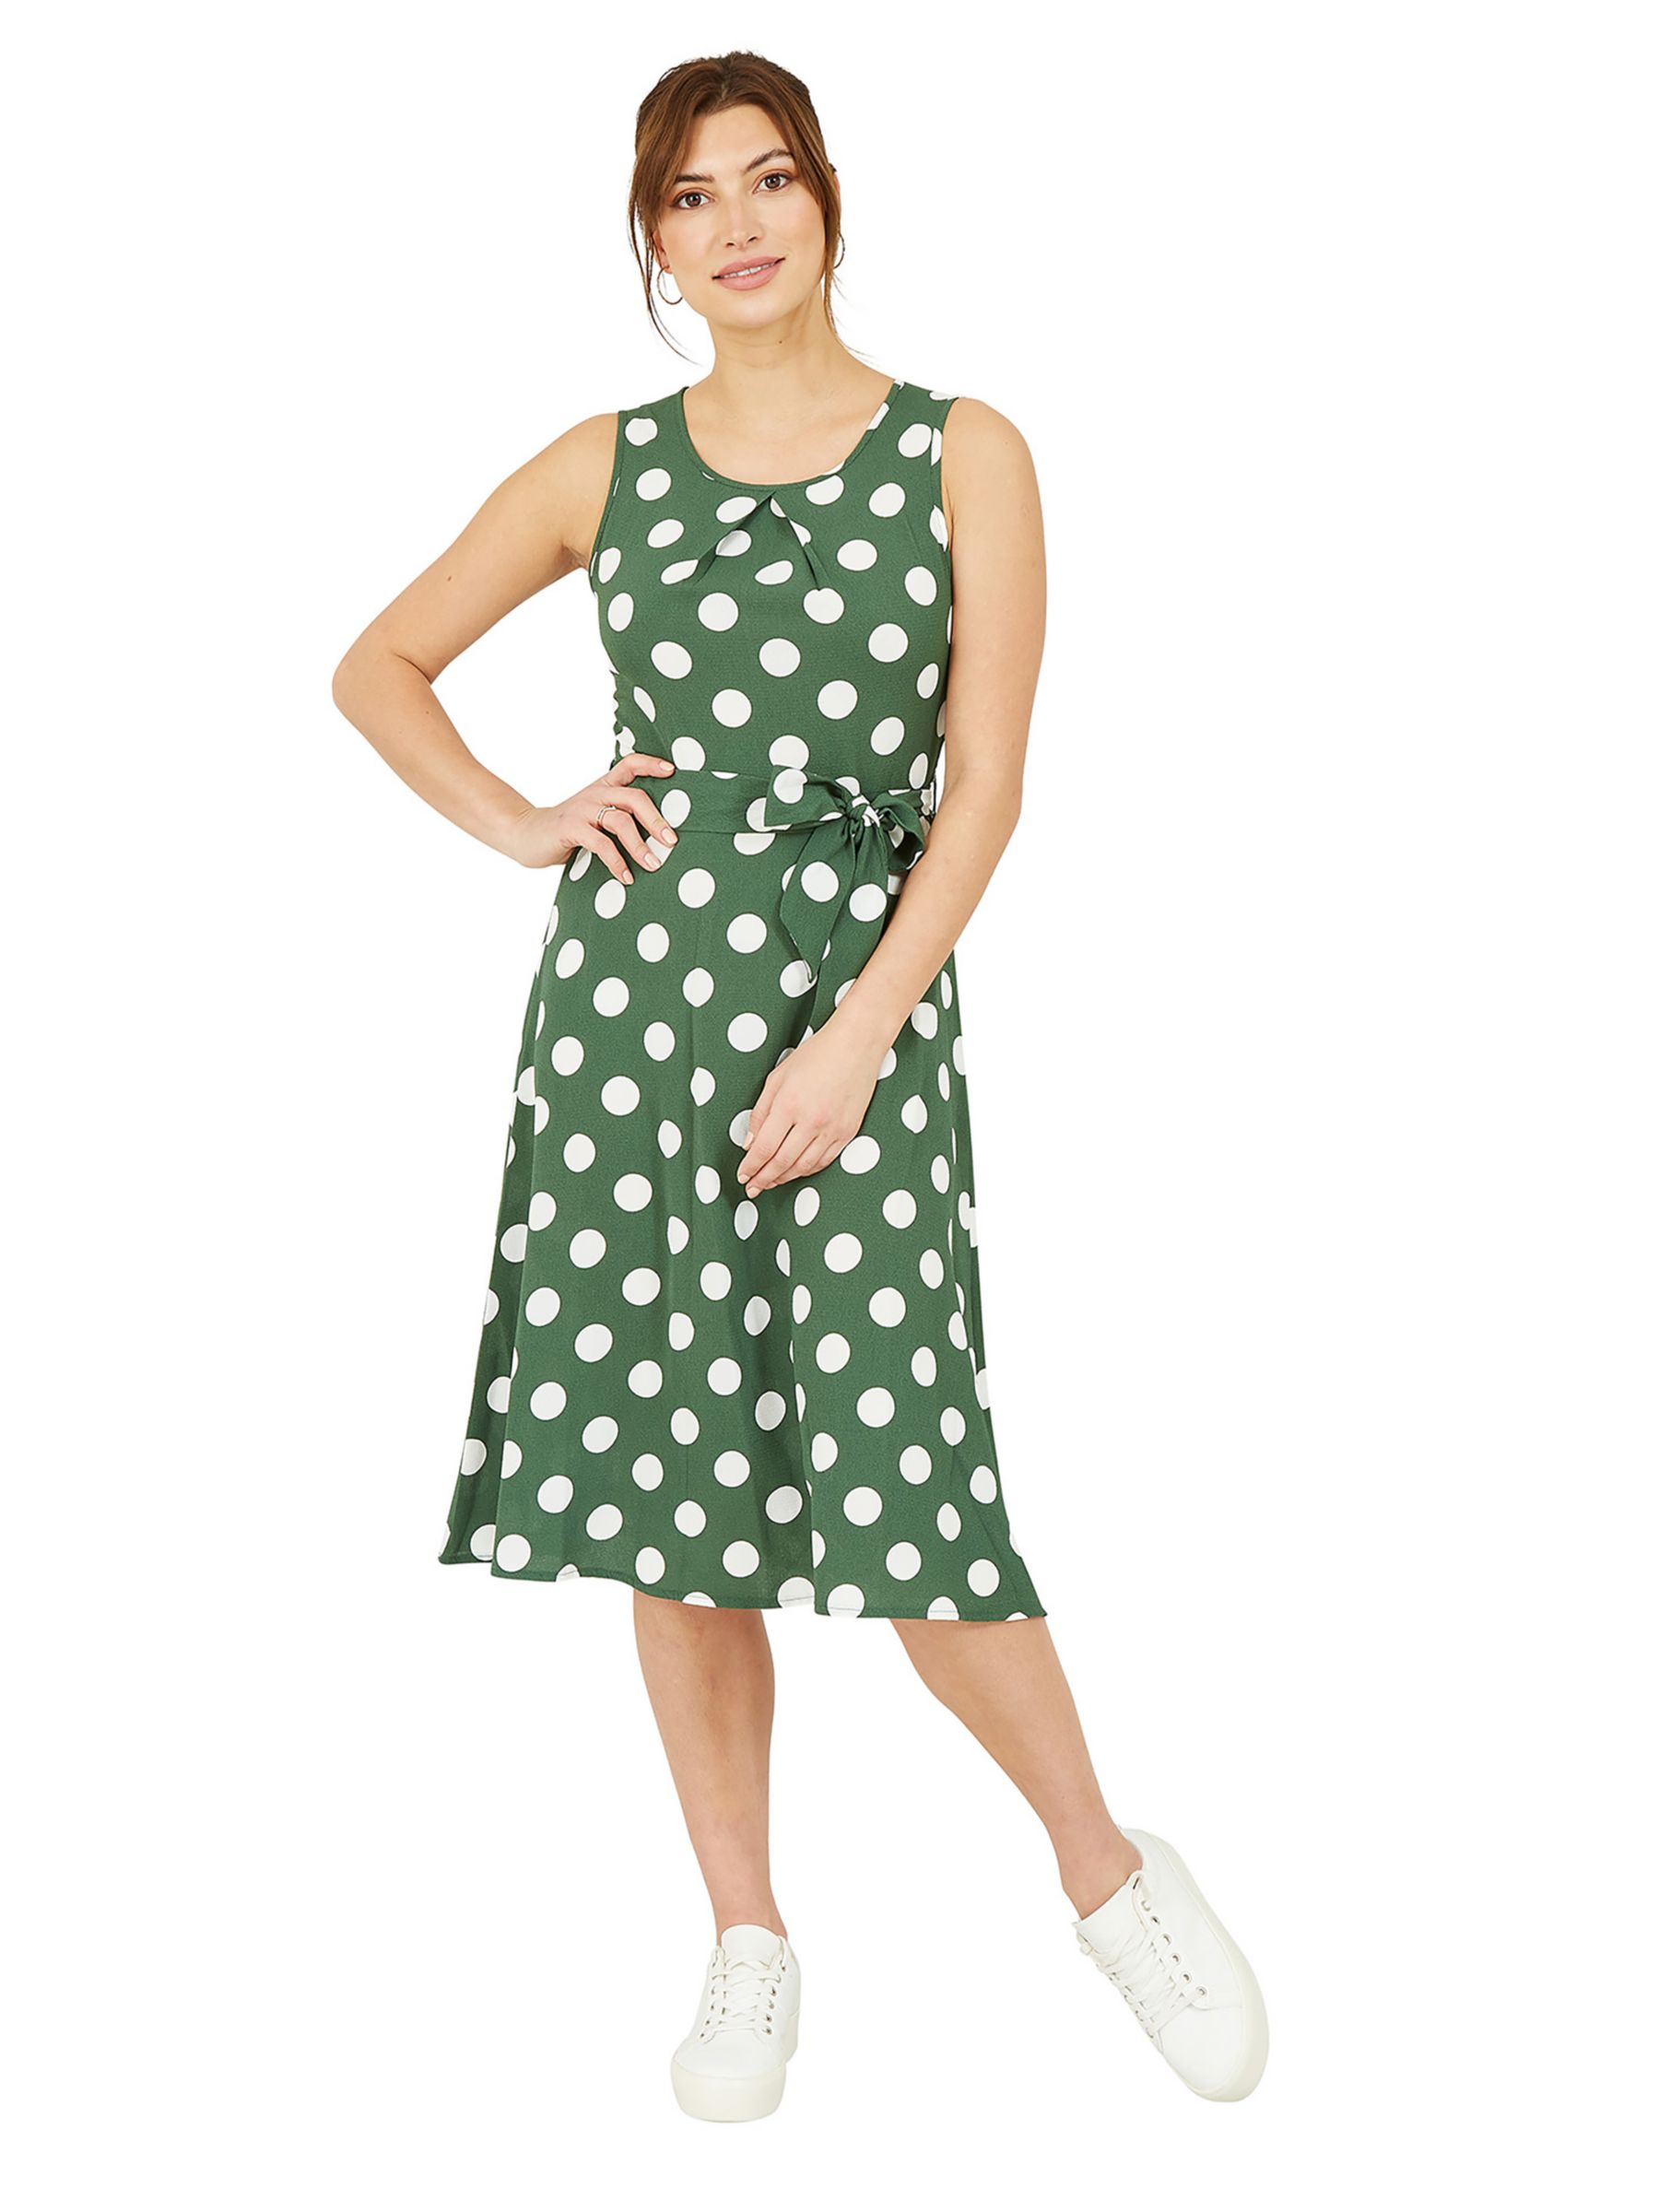 Mela London Polka Dot Sleeveless Skater Midi Dress, Dark Green/Multi, 8